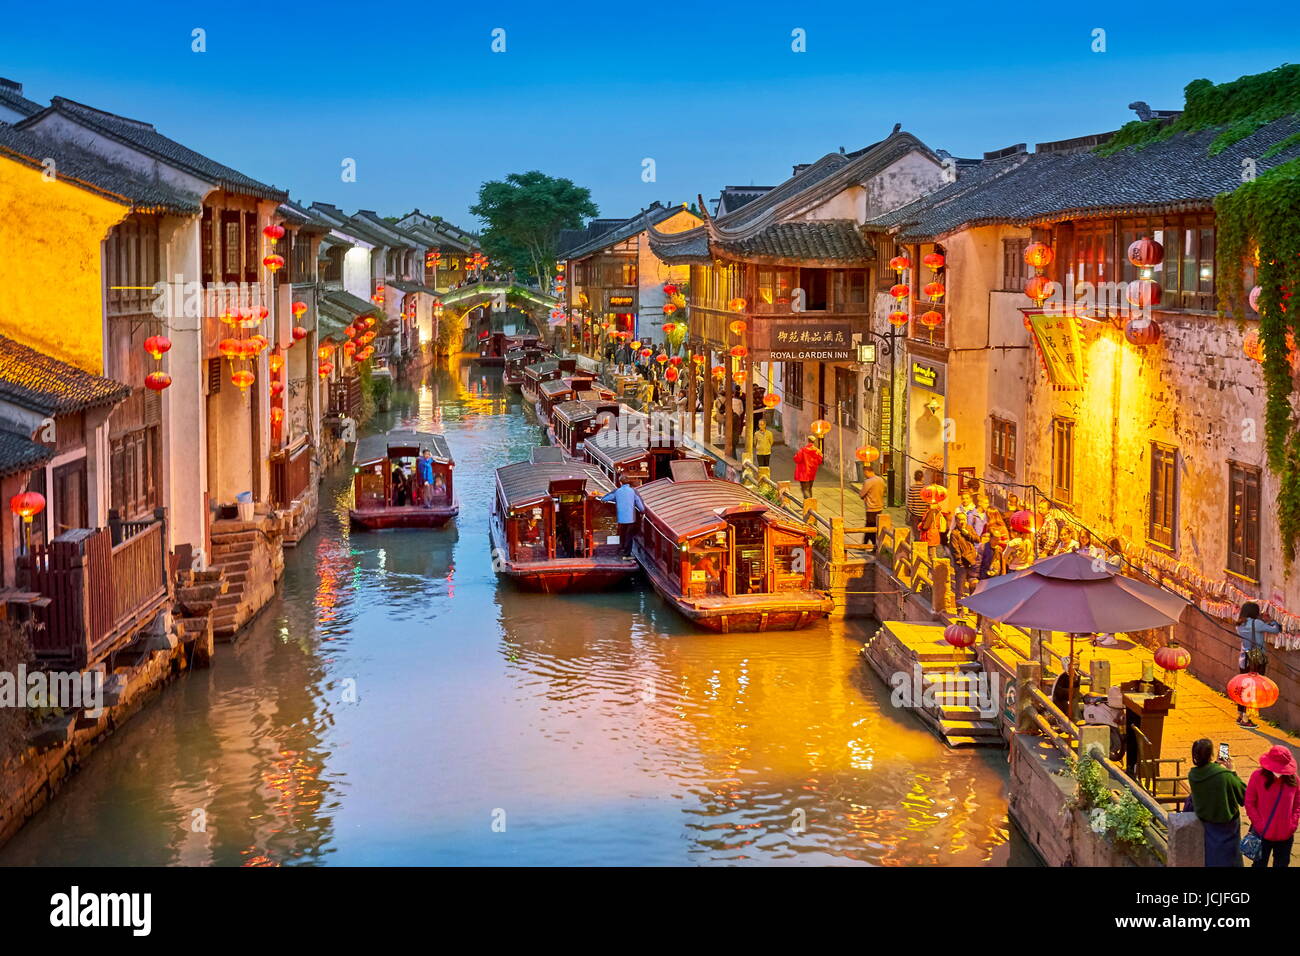 Shantang Canal at evening, Suzhou, China Stock Photo